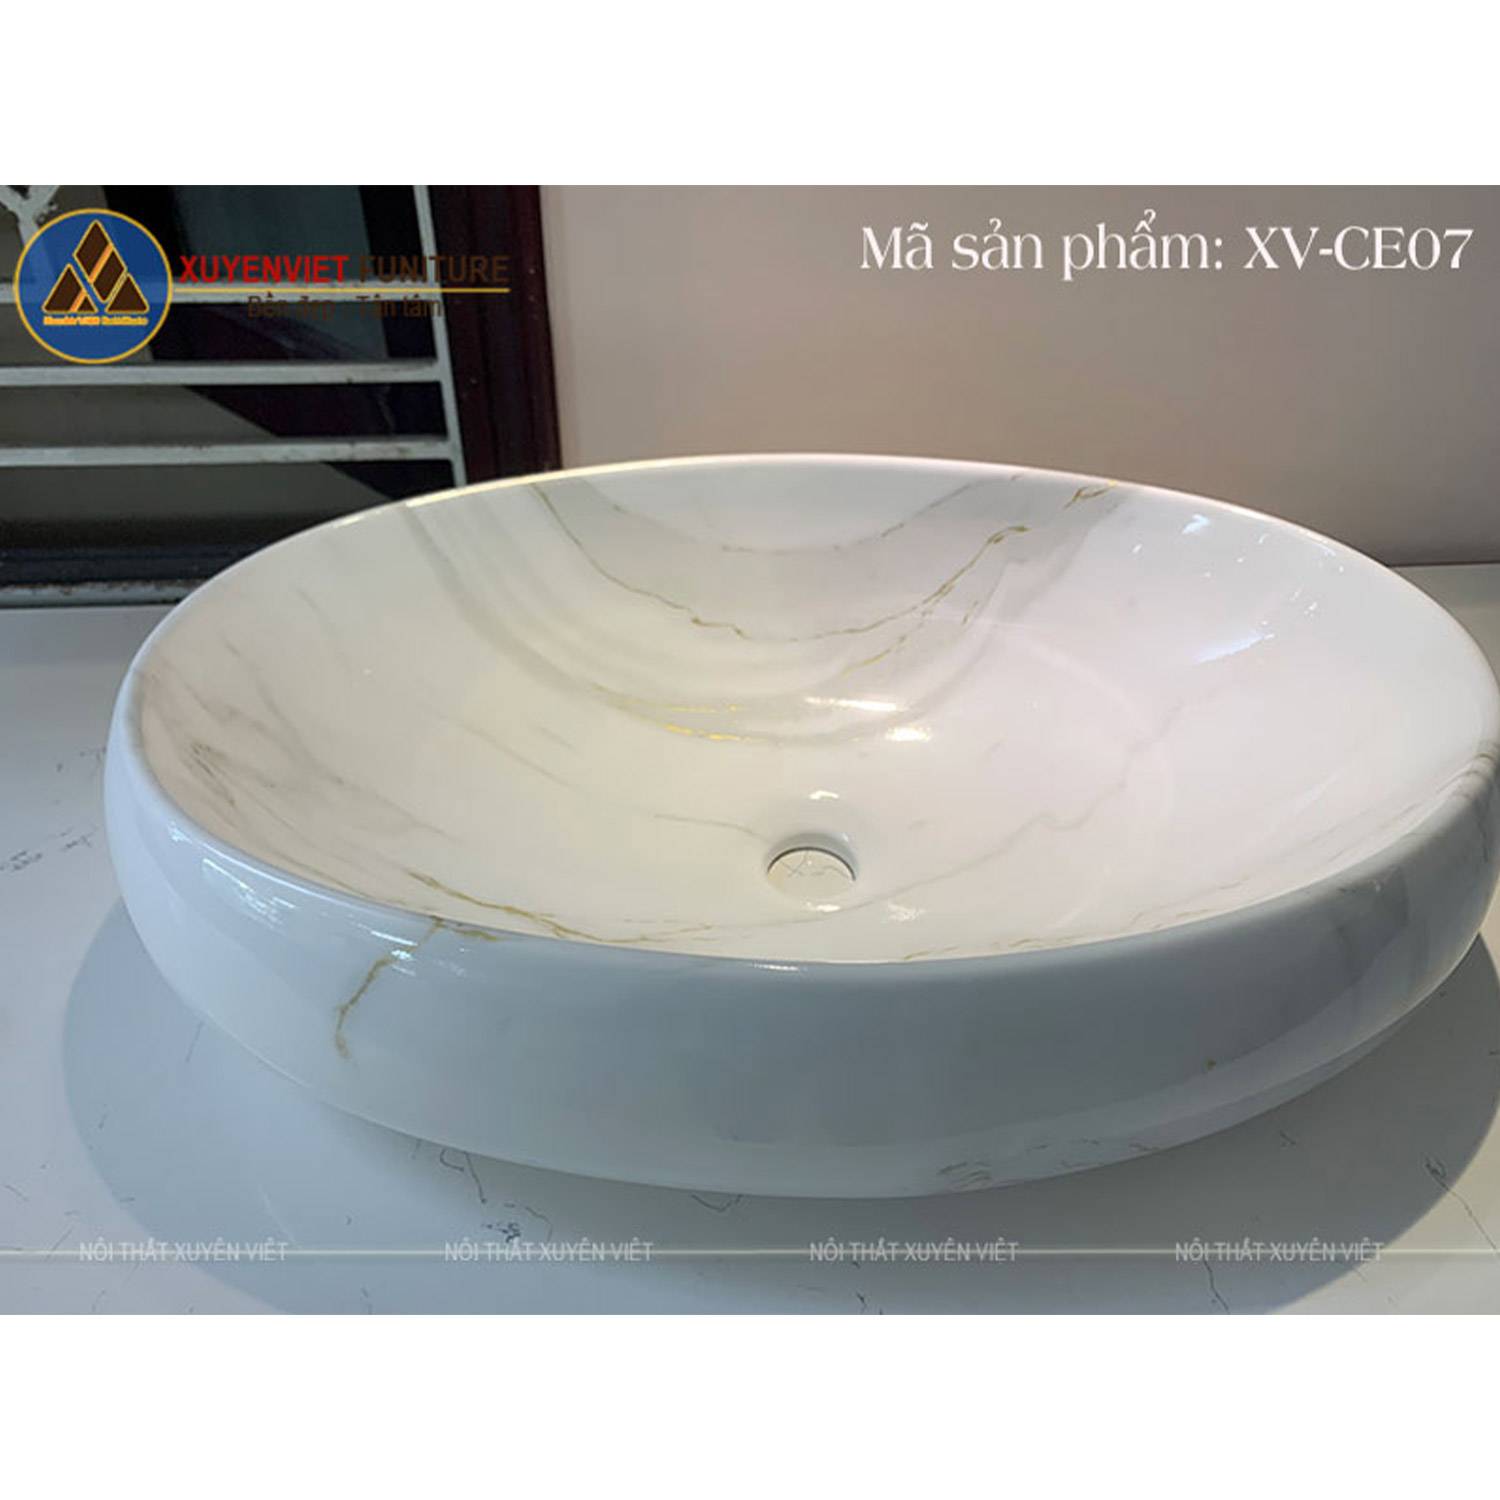 Chậu rửa lavabo đặt bàn hình elip XVCE07 có gam màu trắng khói đầy sang trọng khi đặt trên mặt bàn đá của bộ tủ lavabo